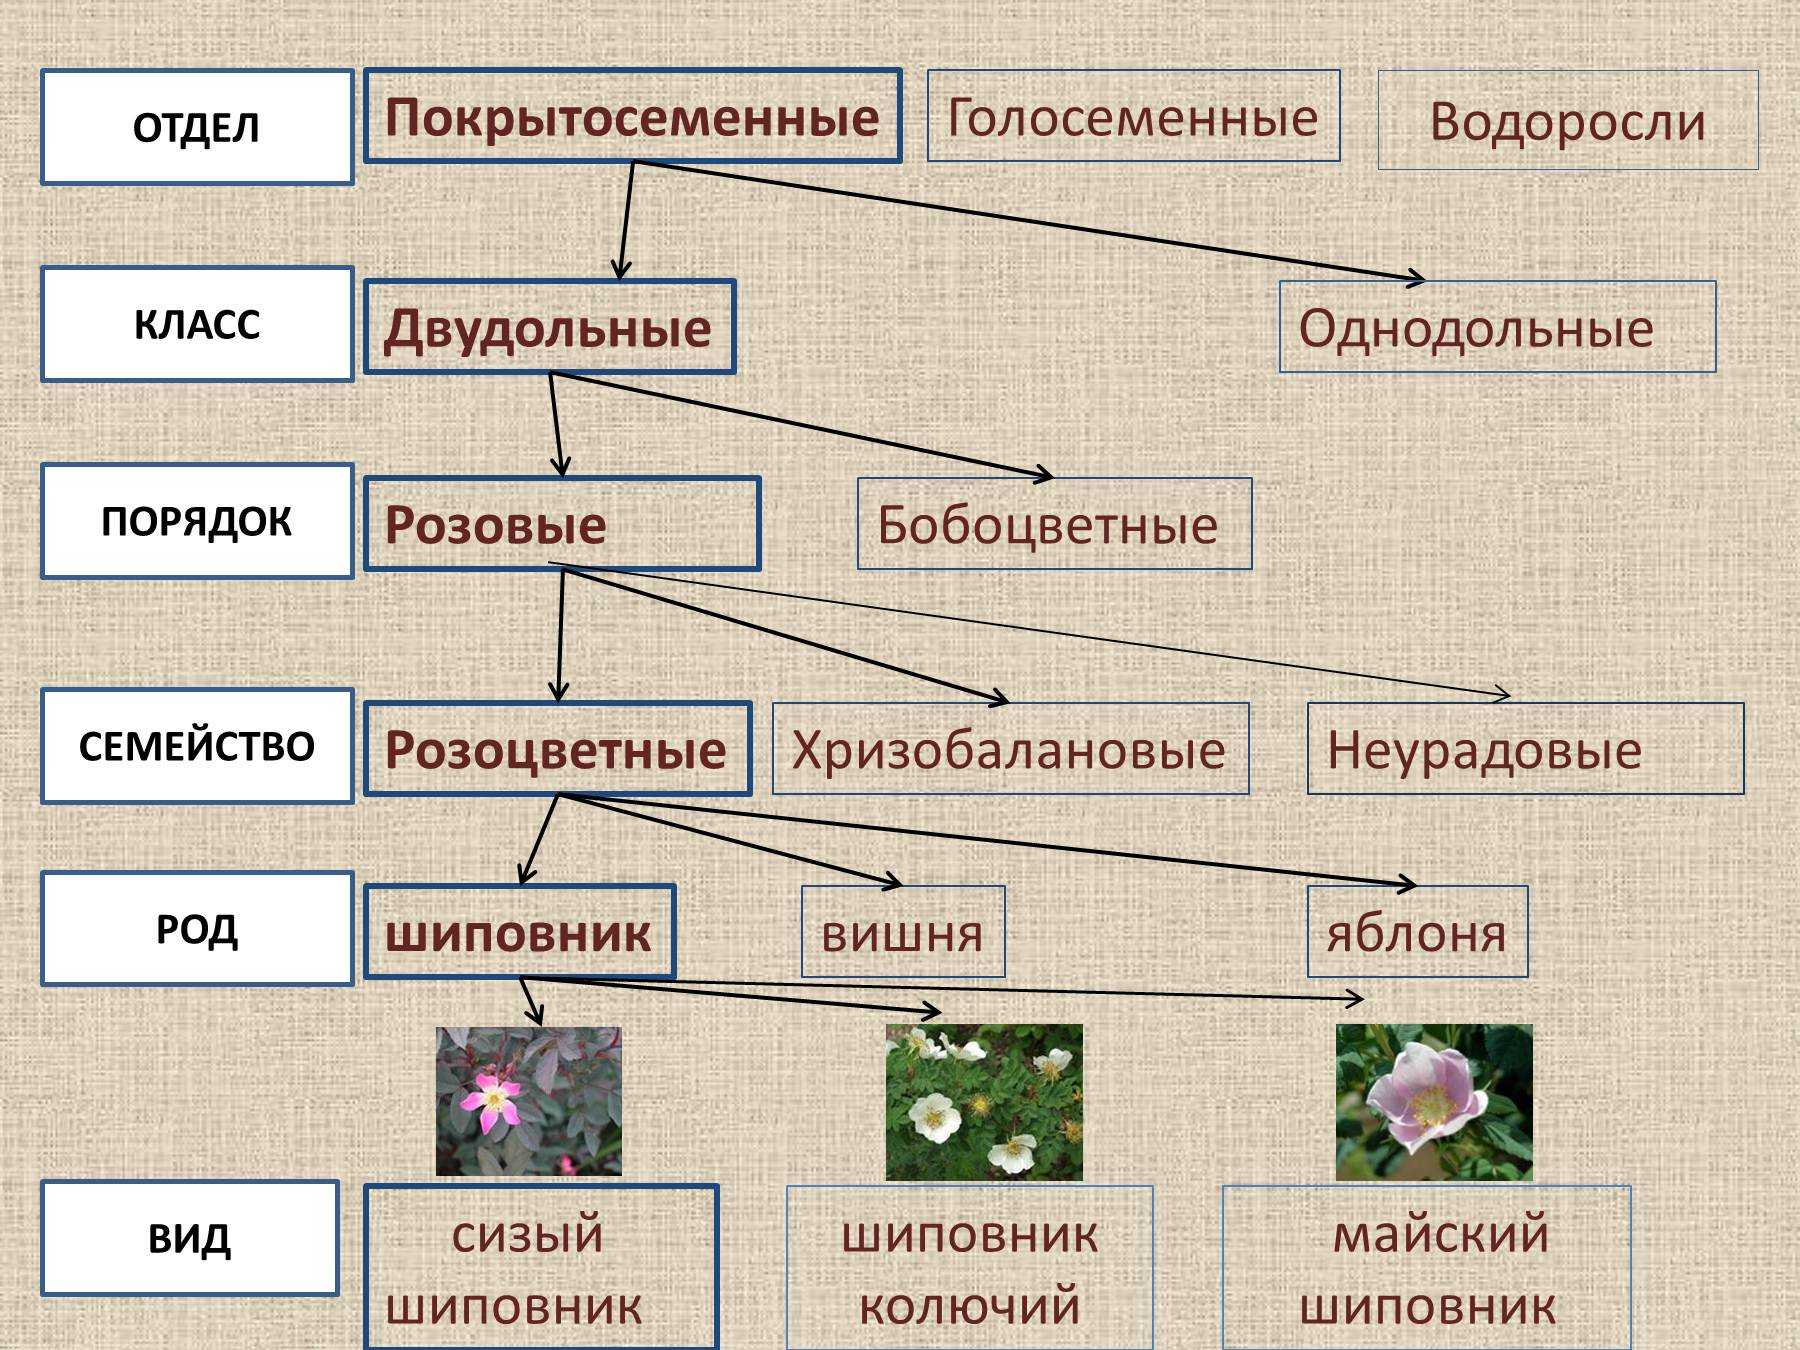 Сколько классов растений. Систематика растений царство отделы. Царство растений отделы классы схема. Систематика царства растений схема. Систематика растений отдел Покрытосеменные классы порядок.